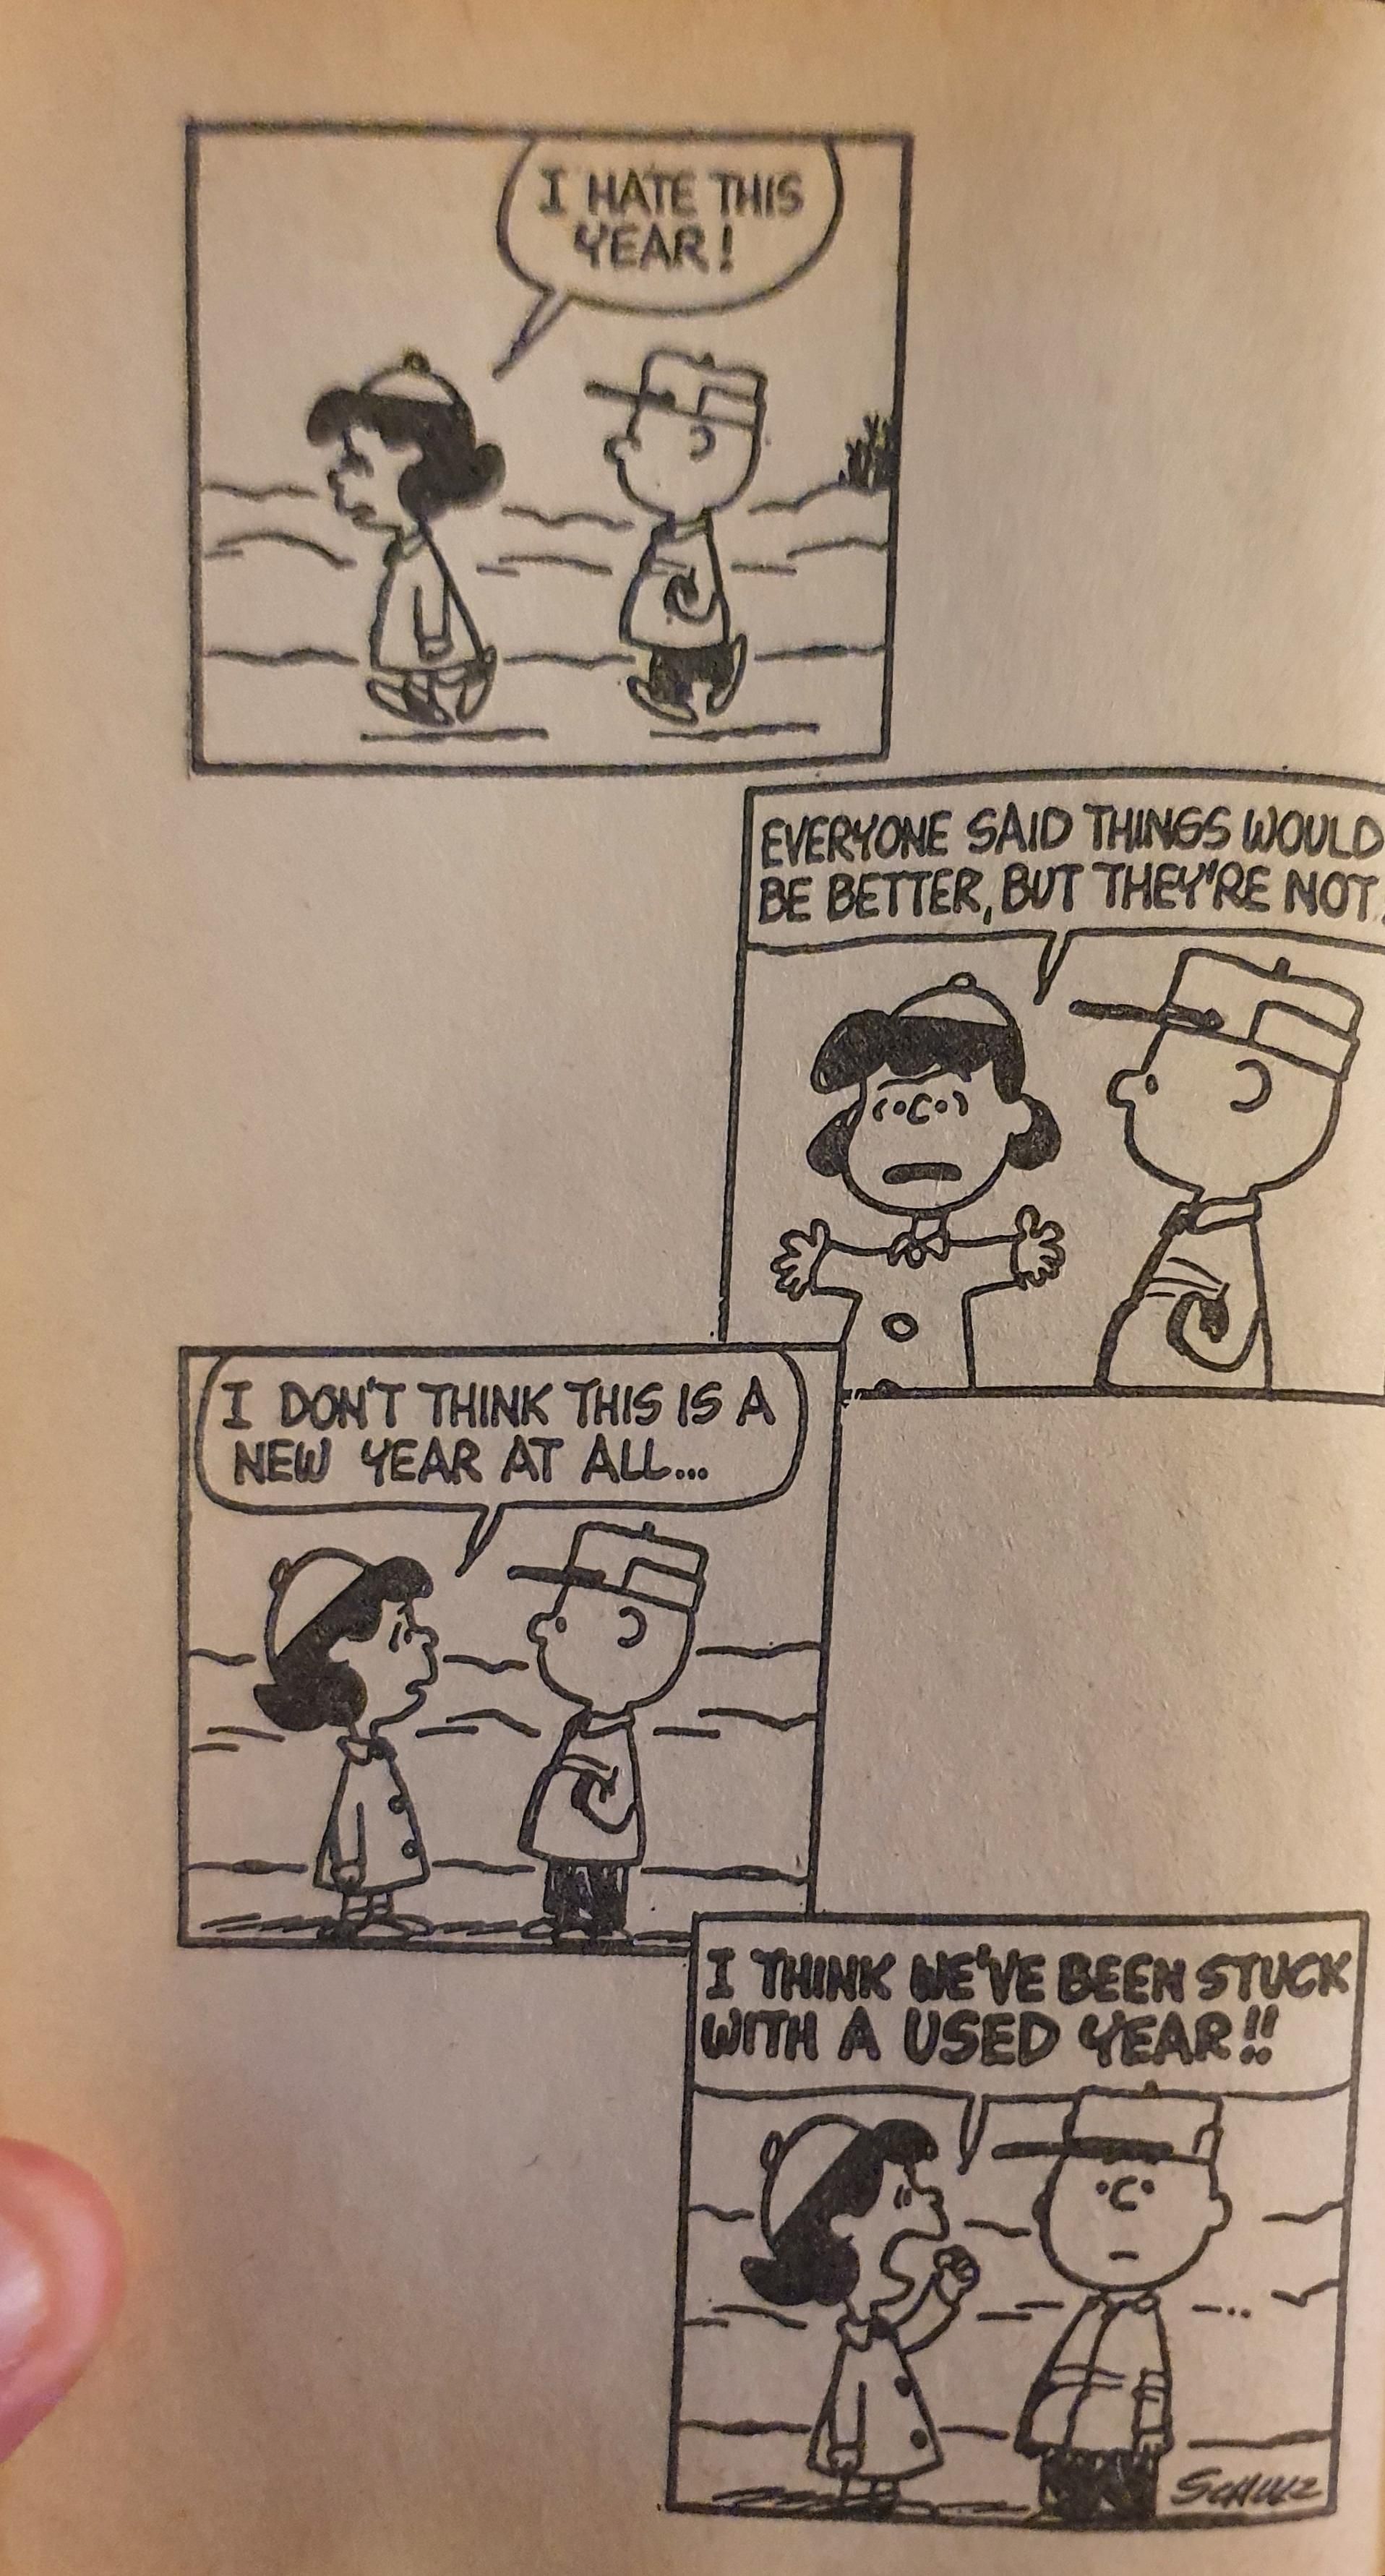 Peanuts written in 1965! Feels fresh to me!